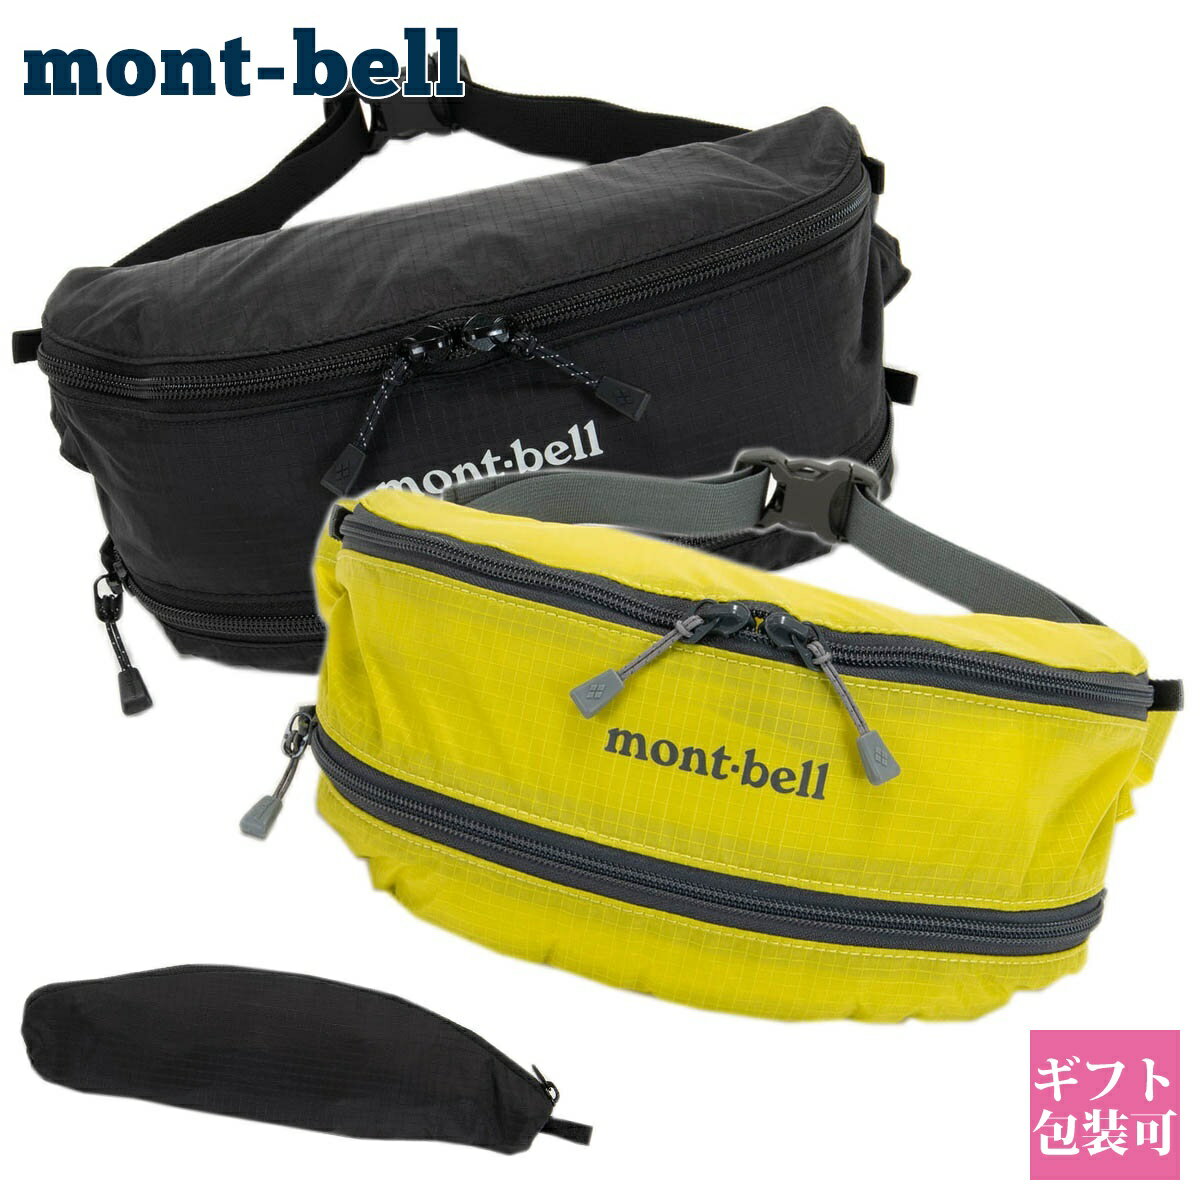 モンベル mont-bell バッグ メンズ レディース ボディバッグ ウエストポーチ ポケッタブル ライトバナナポーチ 1123984 卒業式 入学式